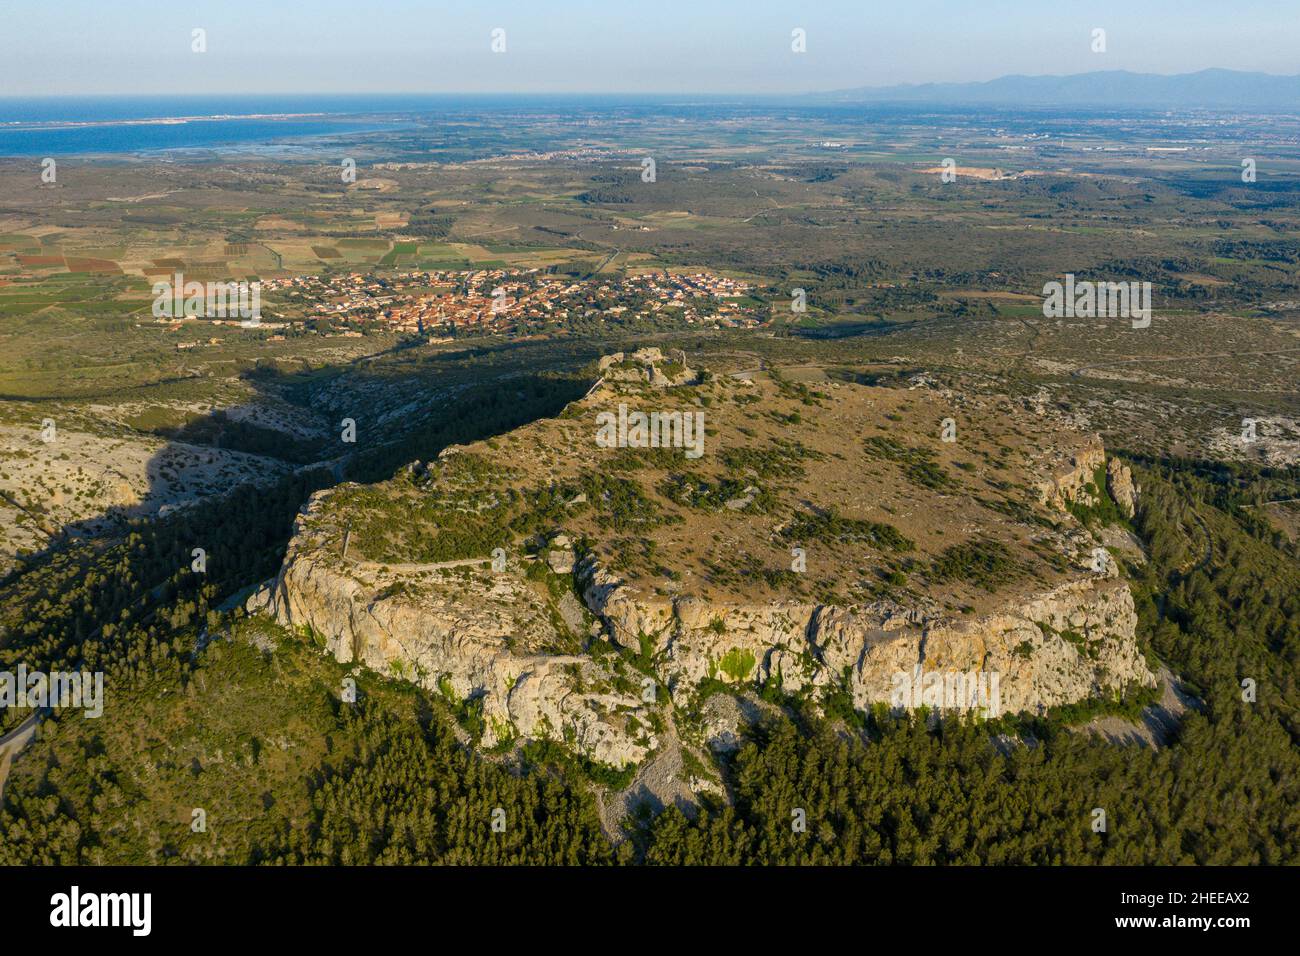 Cette photo de paysage a été prise en Europe, en France, en Occitanie, dans les Pyrénées orientales, en été.Nous voyons le Château d'Opoul Perillos sur son ari Banque D'Images